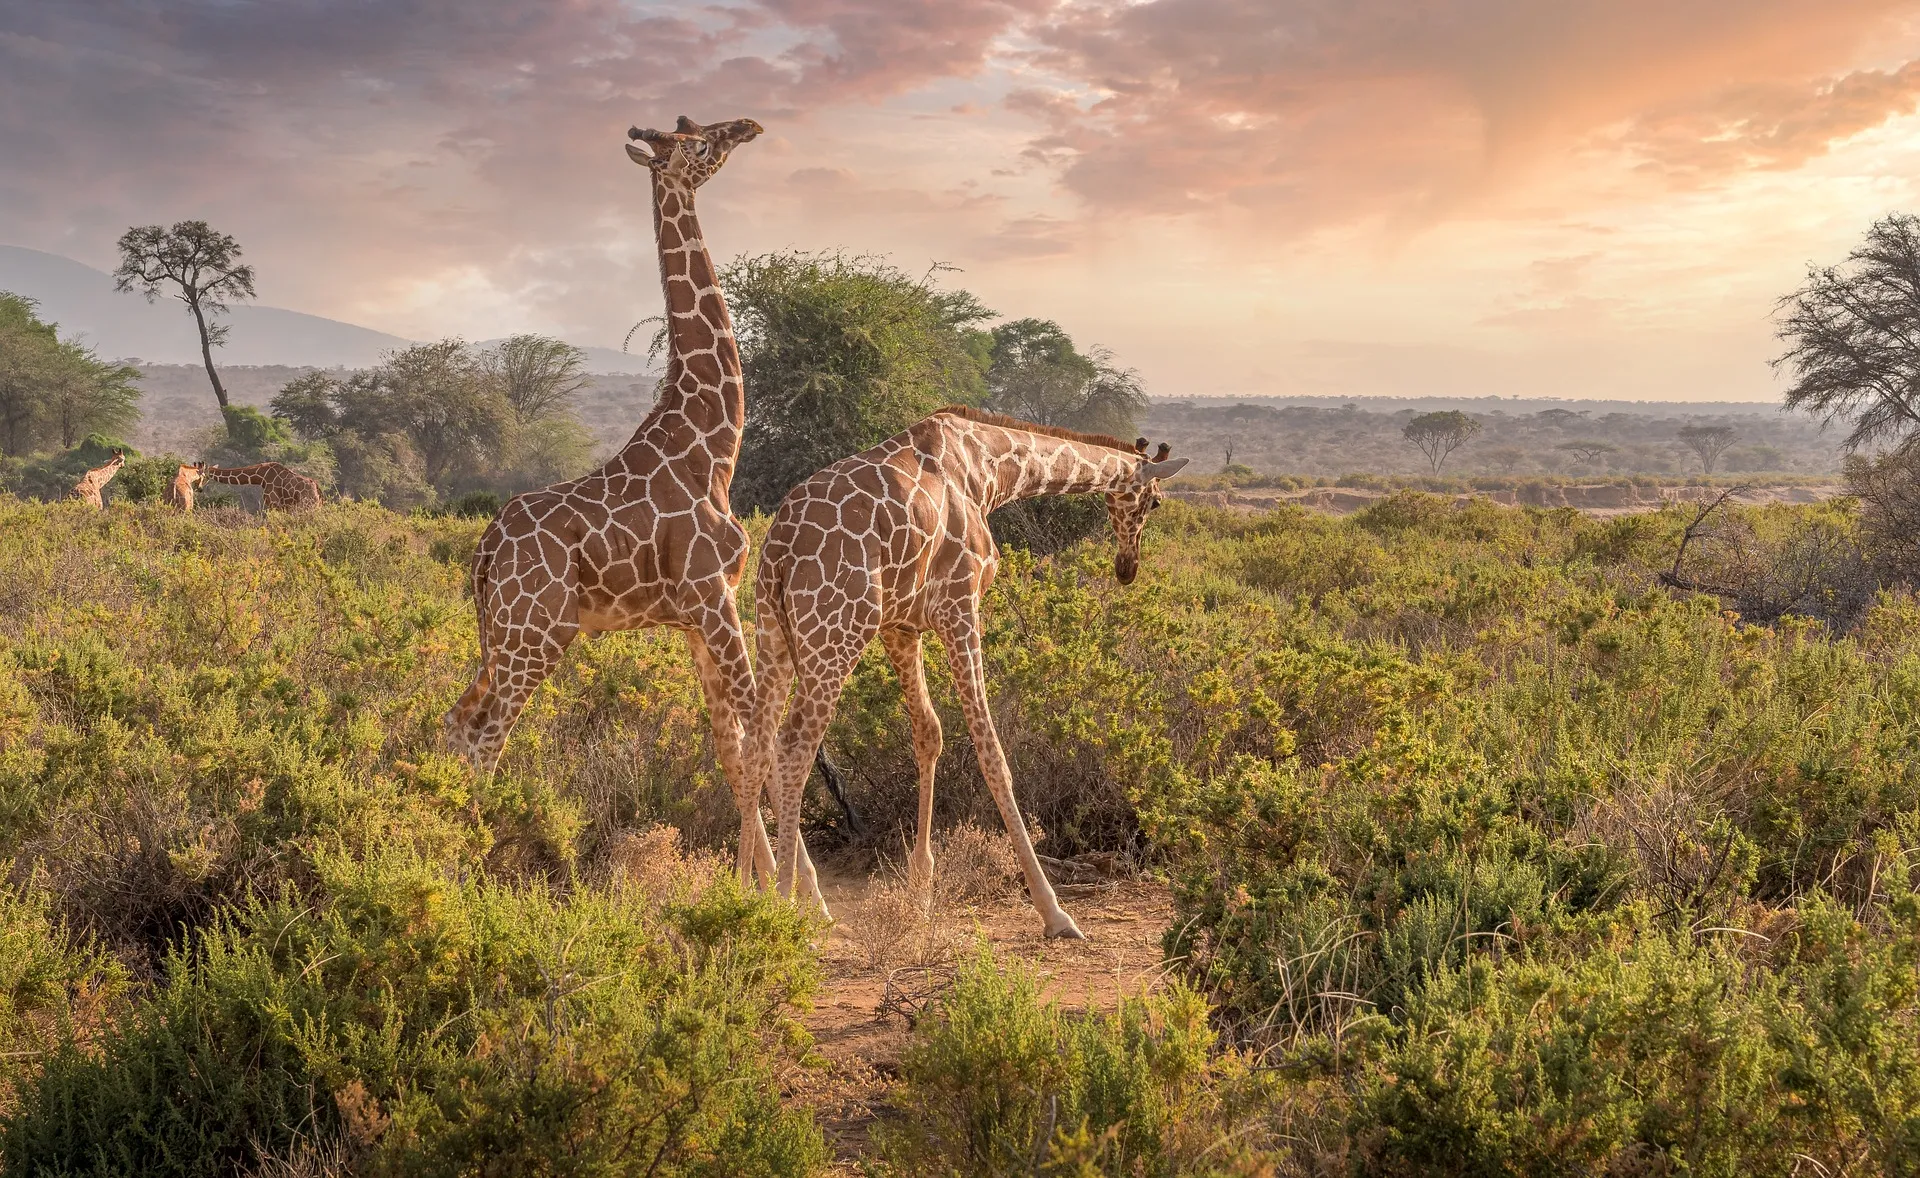 Kenya wildlife safari - giraffe Kenya wildlife safari - giraffe